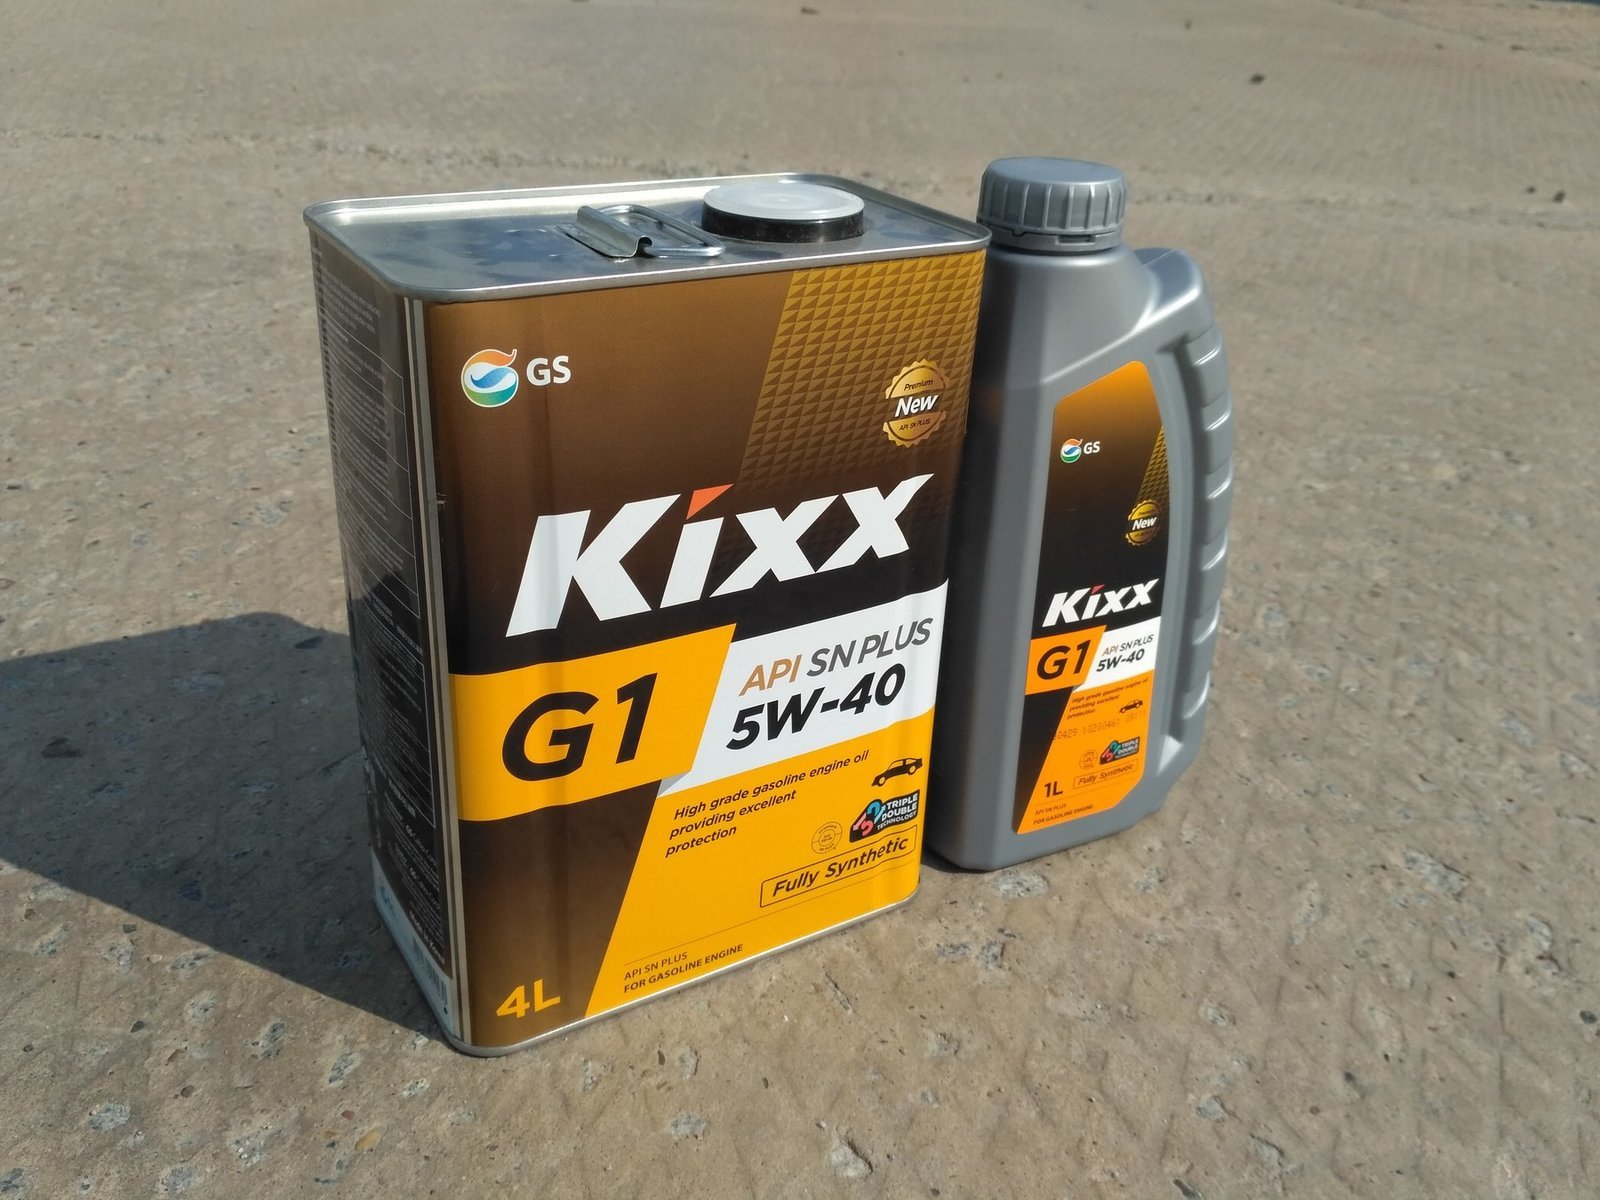 Kixx G1 5W-40 SN Plus Oil Review